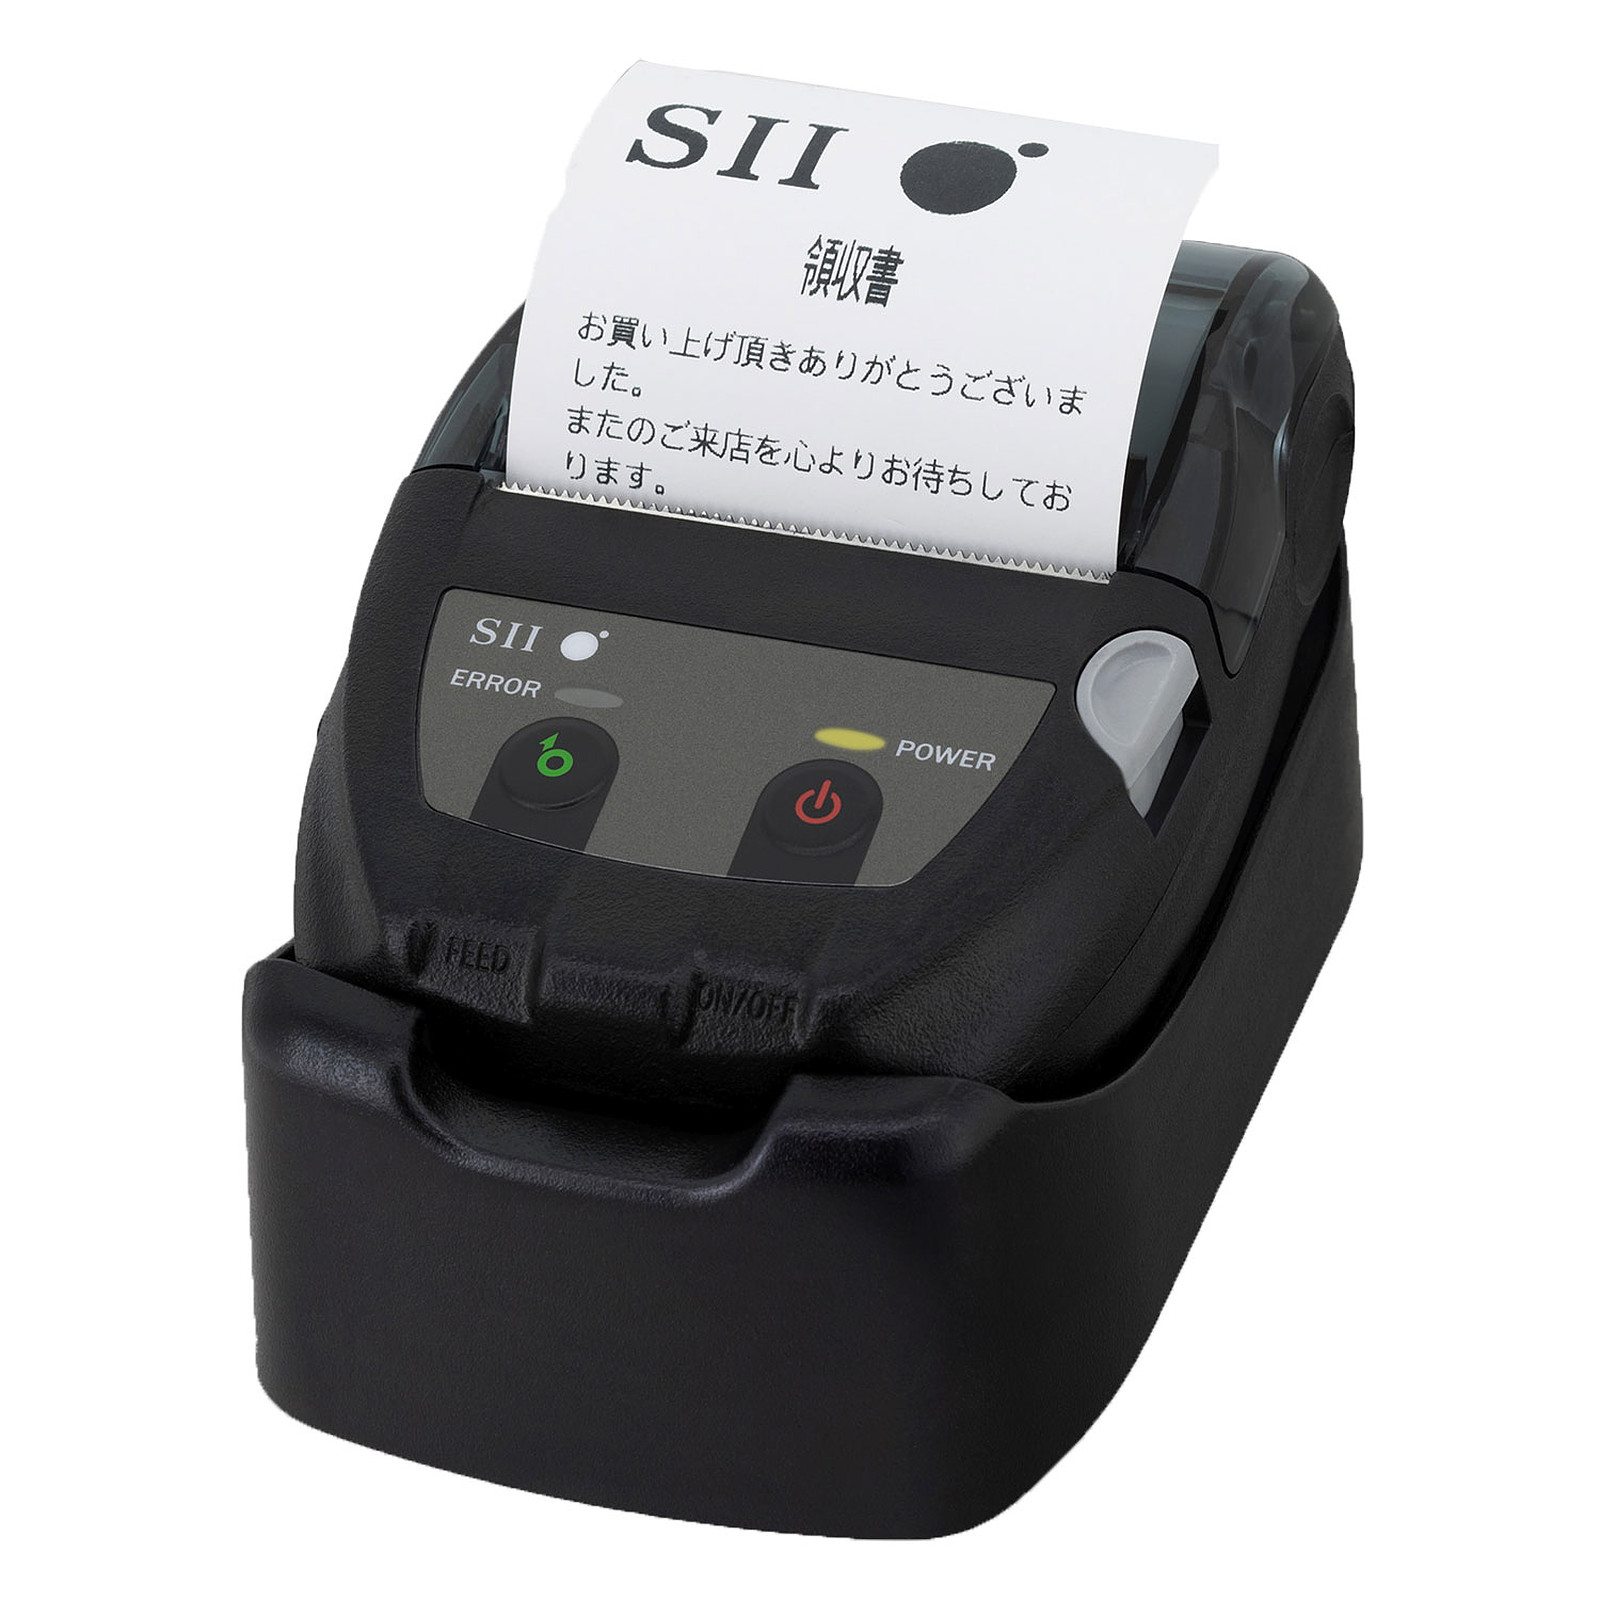 Seiko MP-B20 - Imprimante thermique Seiko Instruments